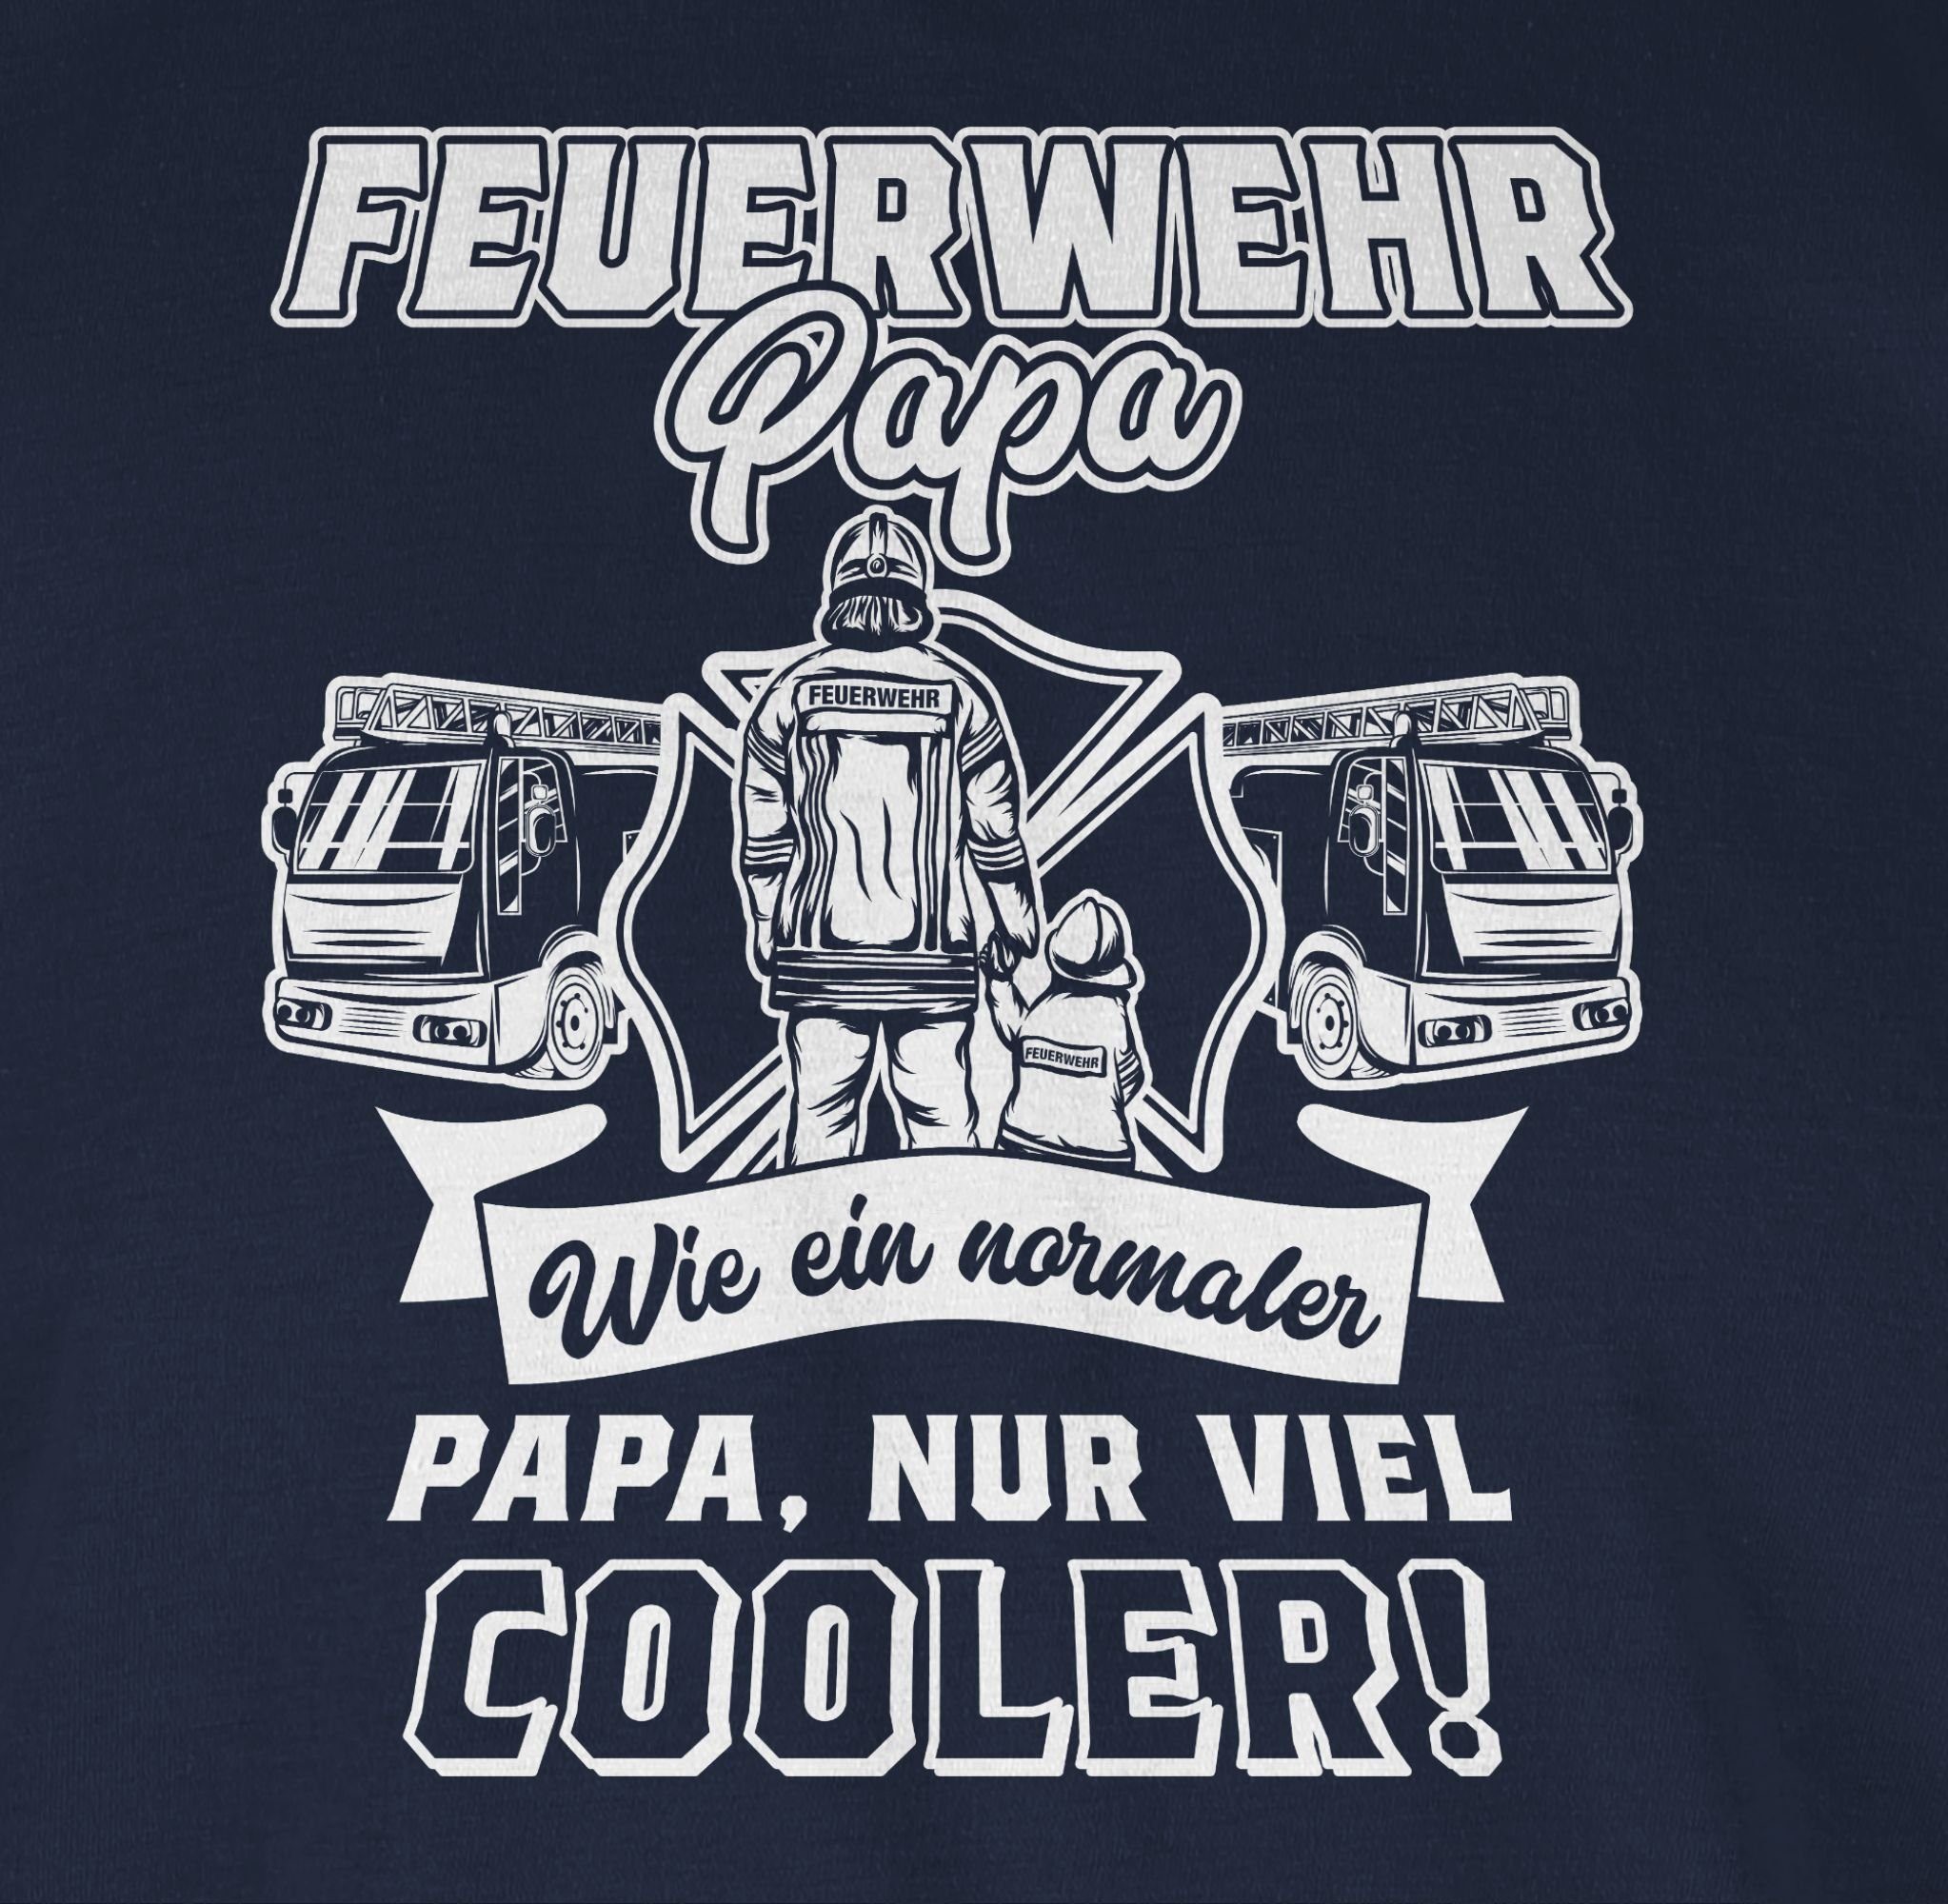 Papa Vatertag wie Blau normaler Geschenk cooler T-Shirt Papa Papa Feuerwehr Navy ein für nur Weiß Shirtracer 1